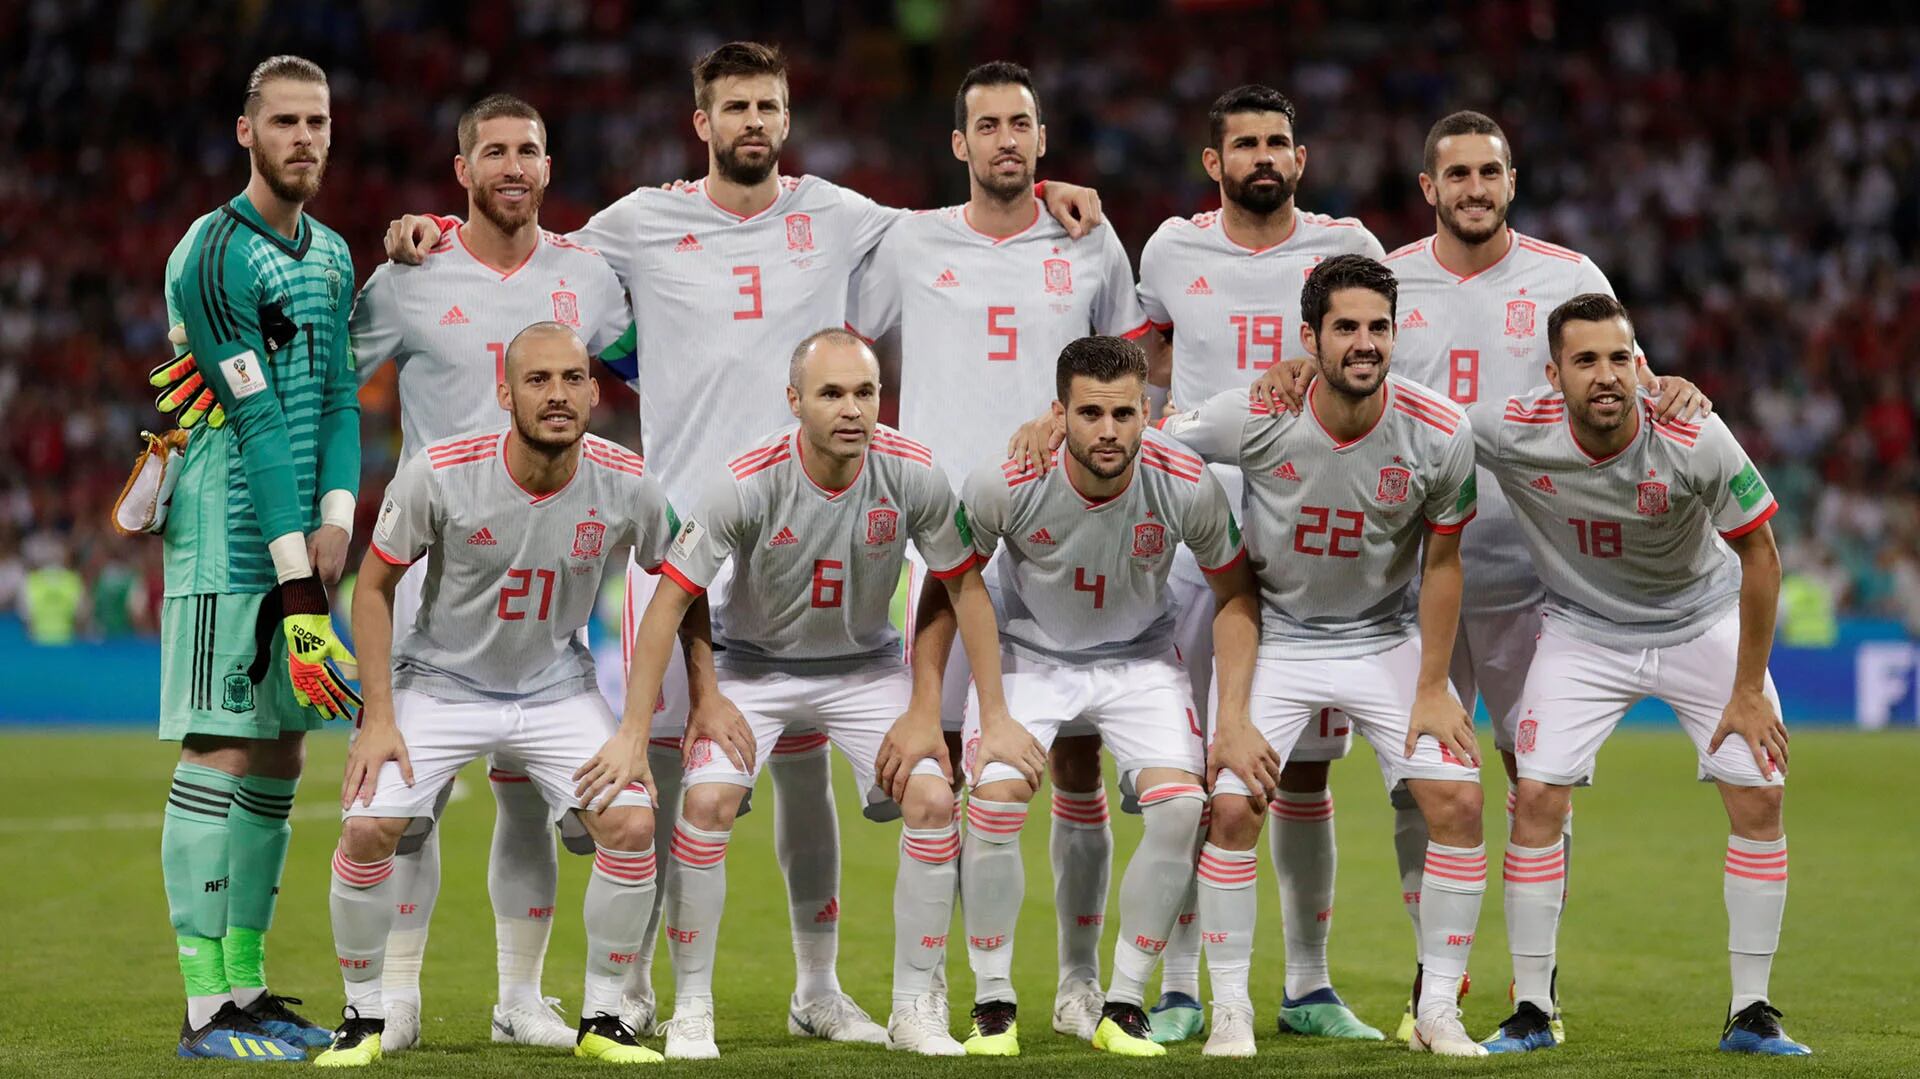 La maldición del uniforme blanco de la de España en Mundiales - Infobae